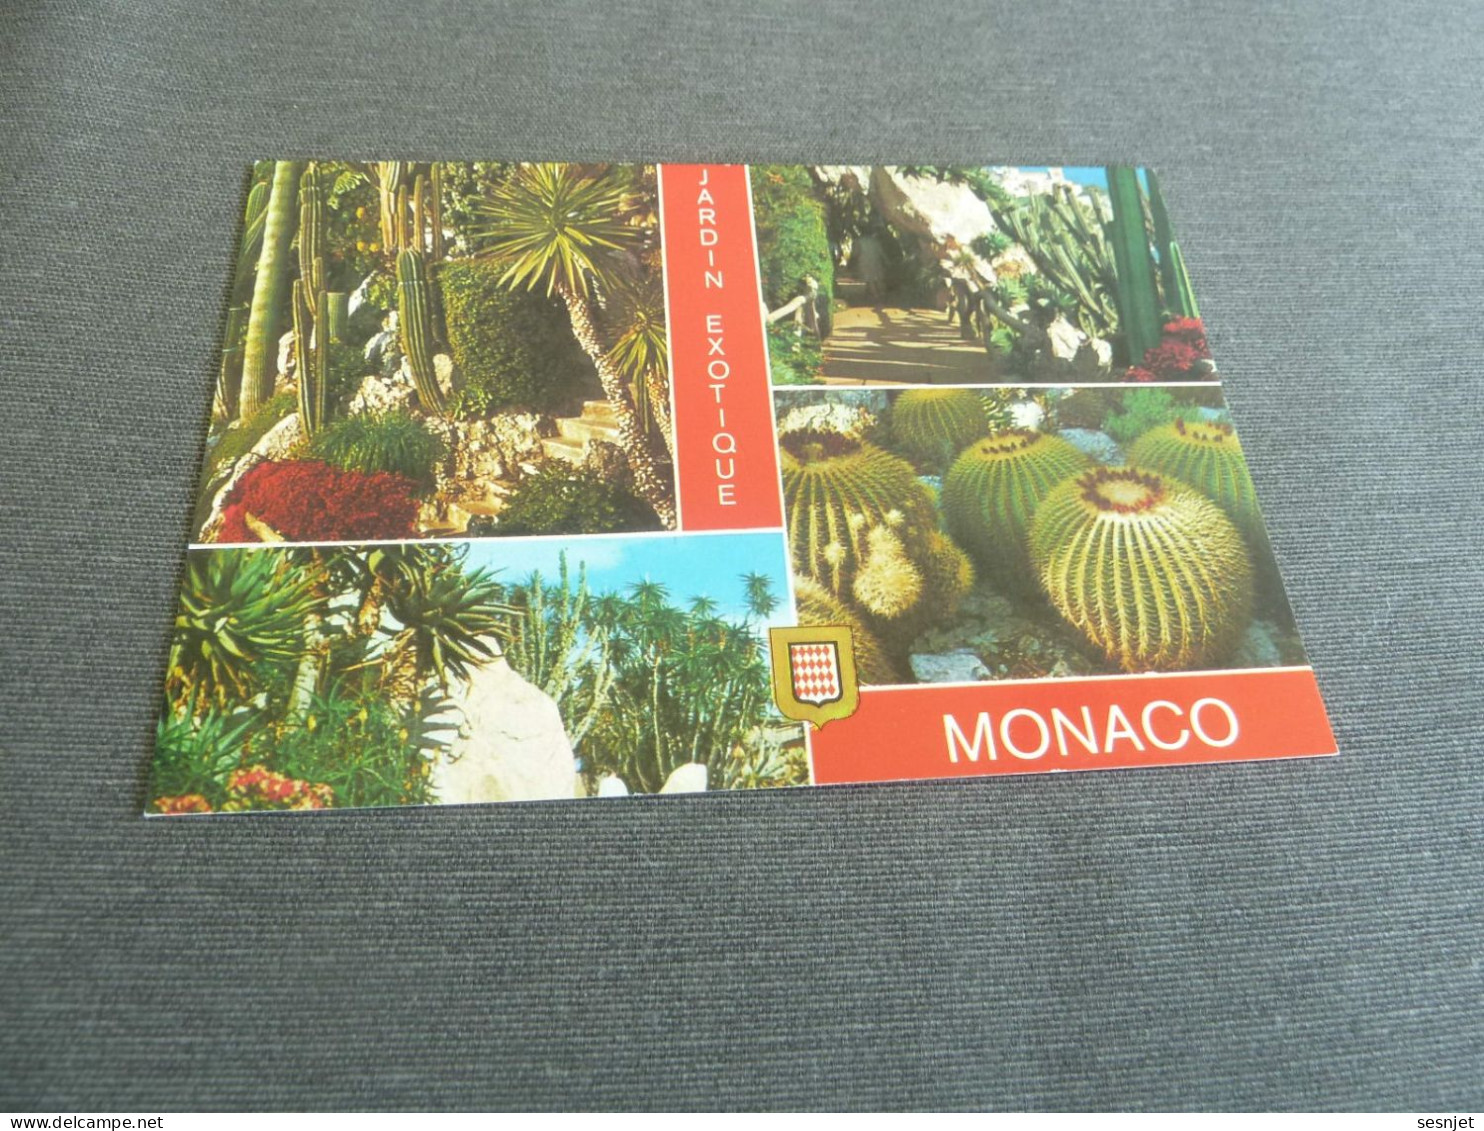 Principauté De Monaco - Le Jardin Exotique - Multi-vues - N.°542 - Editions Molipor - - Exotic Garden